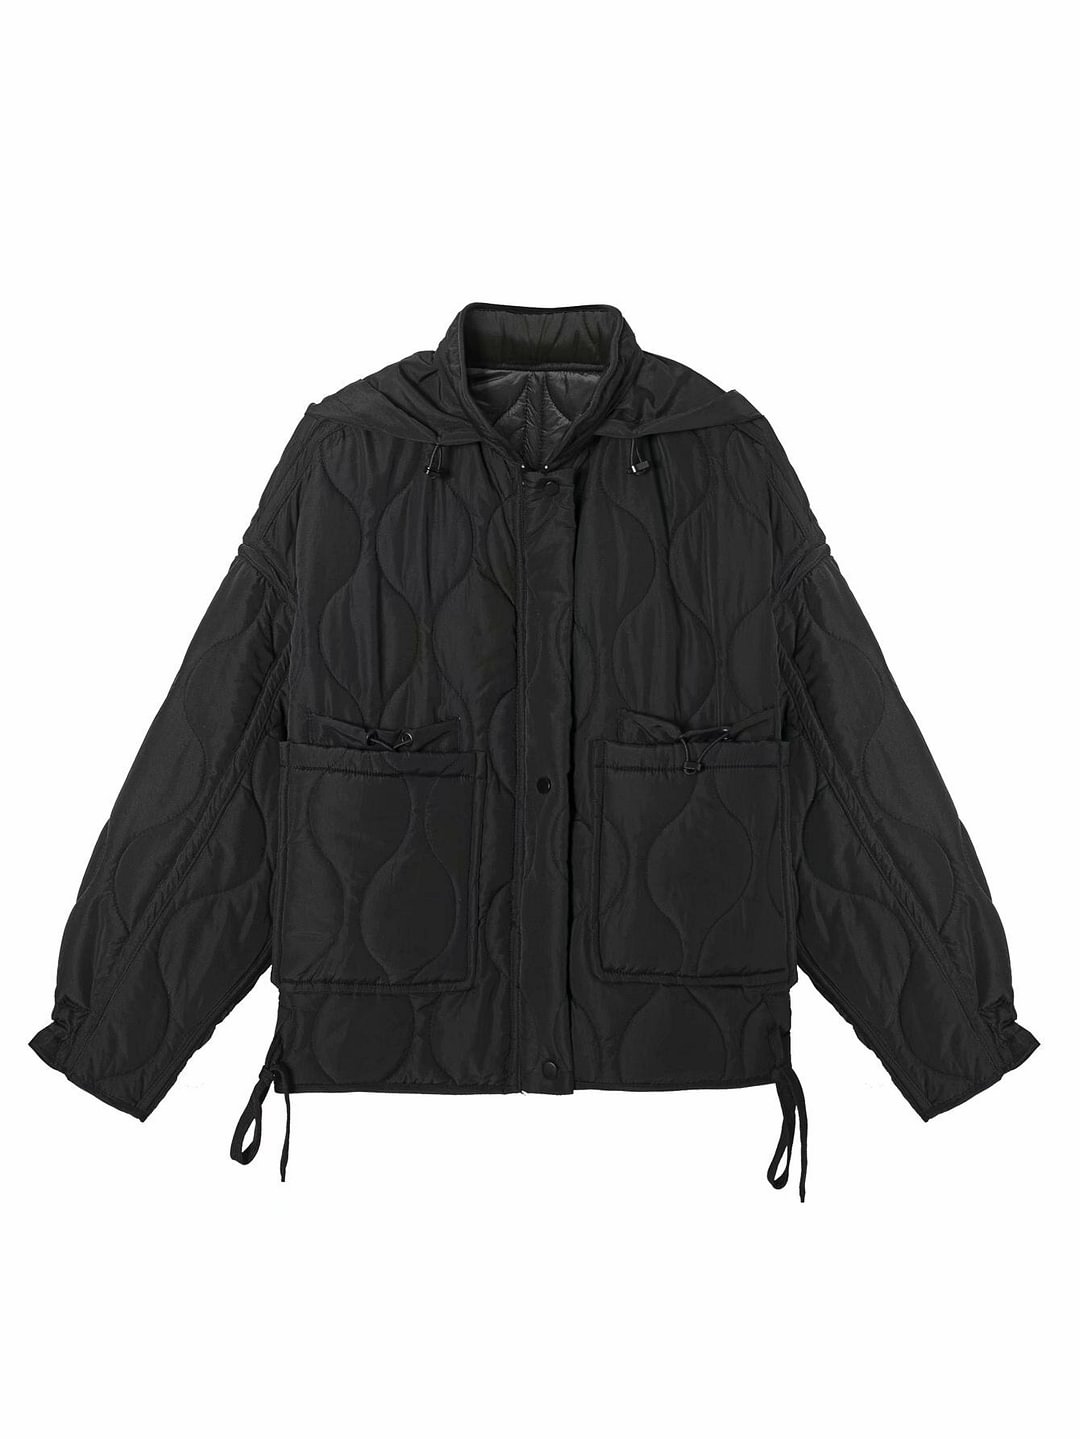 Women's Hoodies Coat Black Cropped Oversize Jacket Outerwear Winter 2020 Warm Parkas Crop Tops Streetwear Femala BF Long Sleeves